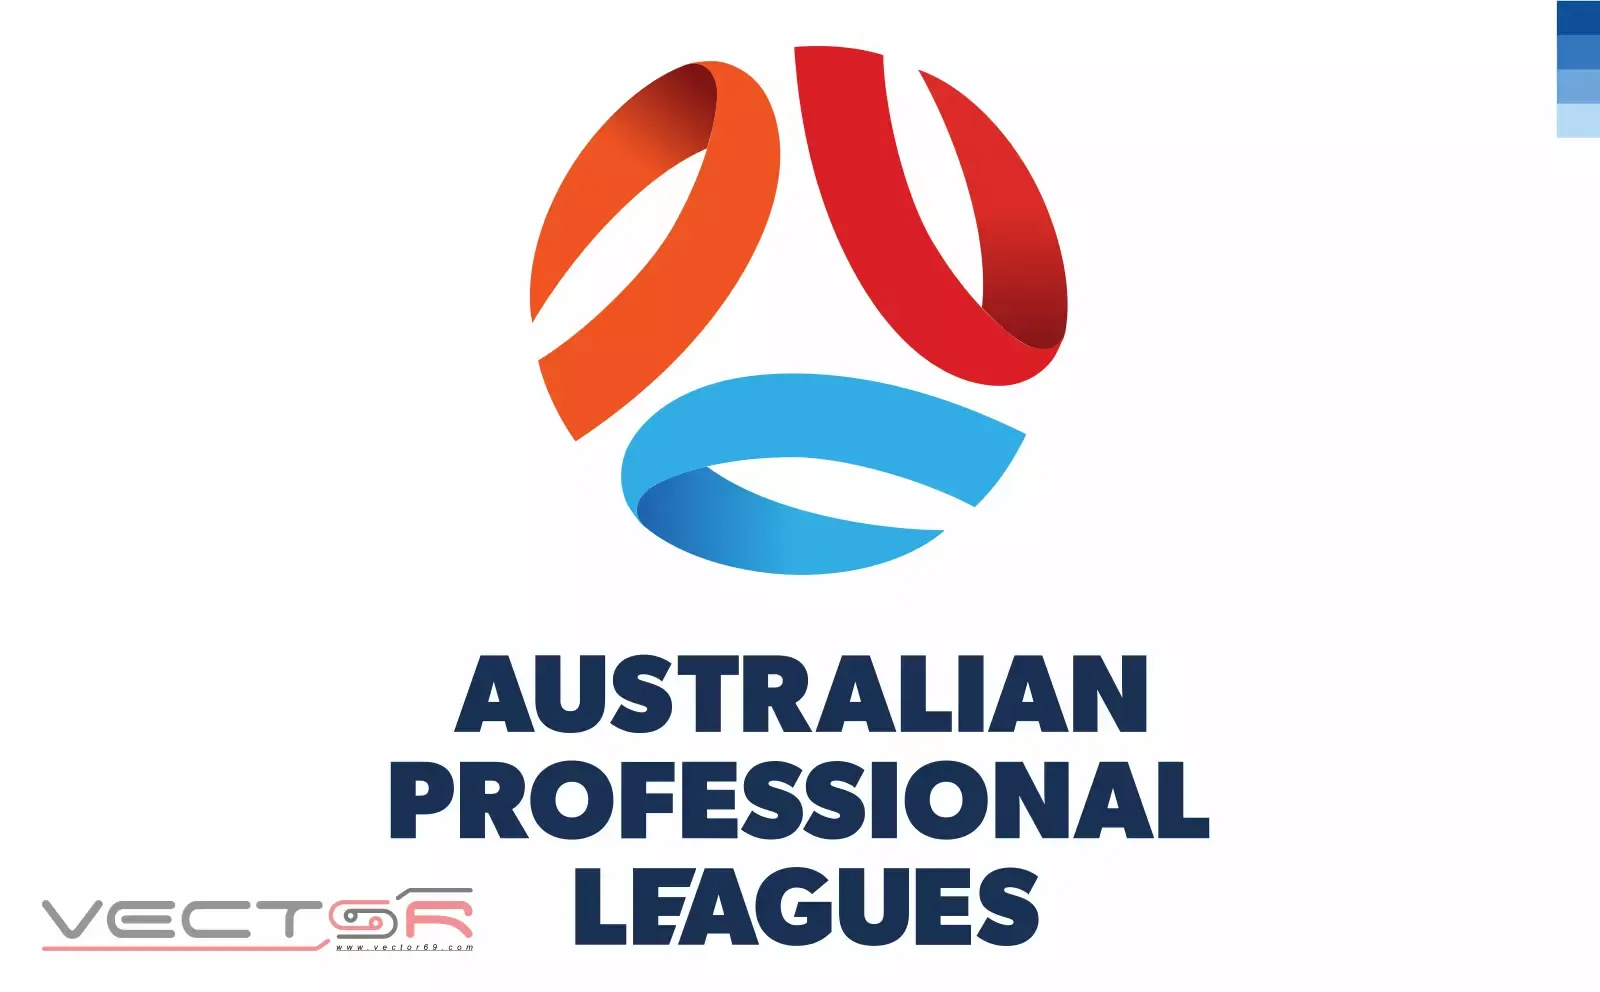 Australian Professional Leagues (APL) (2020) Logo - Download Vector File Encapsulated PostScript (.EPS)